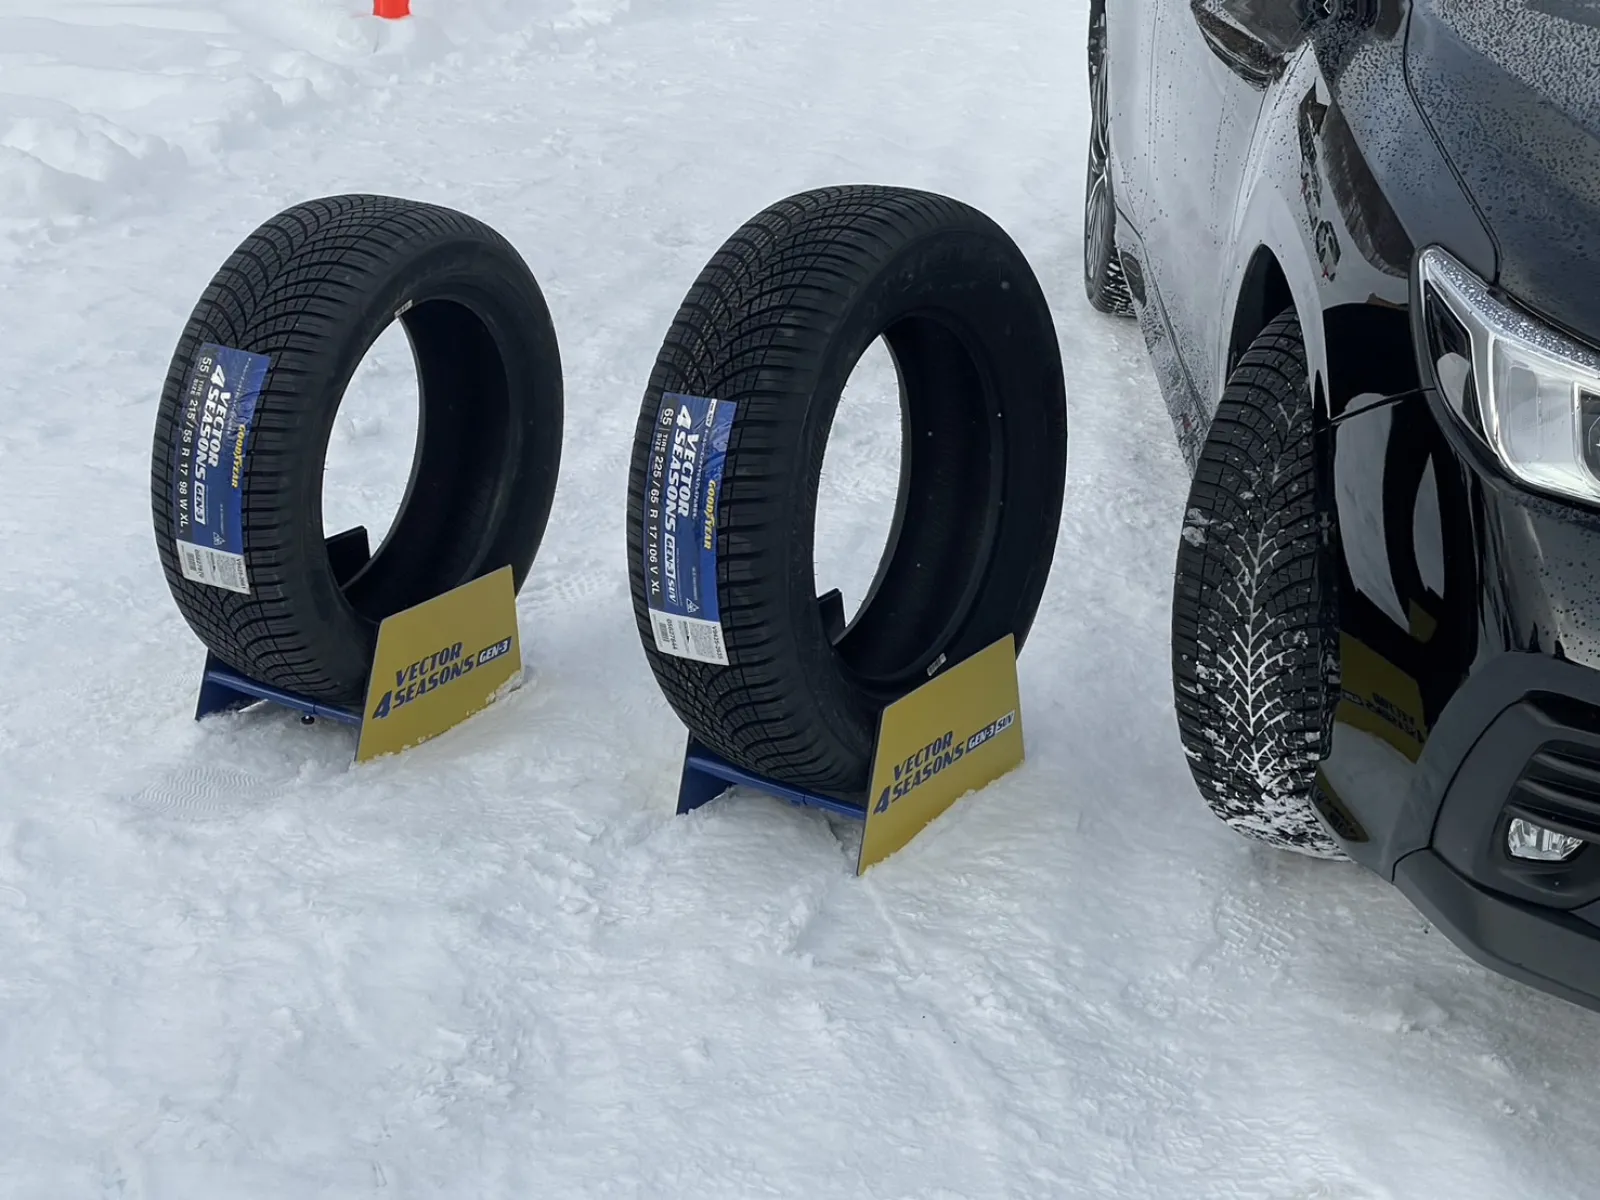 グッドイヤー オールシーズンタイヤ雪上試乗レポート | カーニュース | カーライフ・カー用品サイトMOBILA（モビラ）